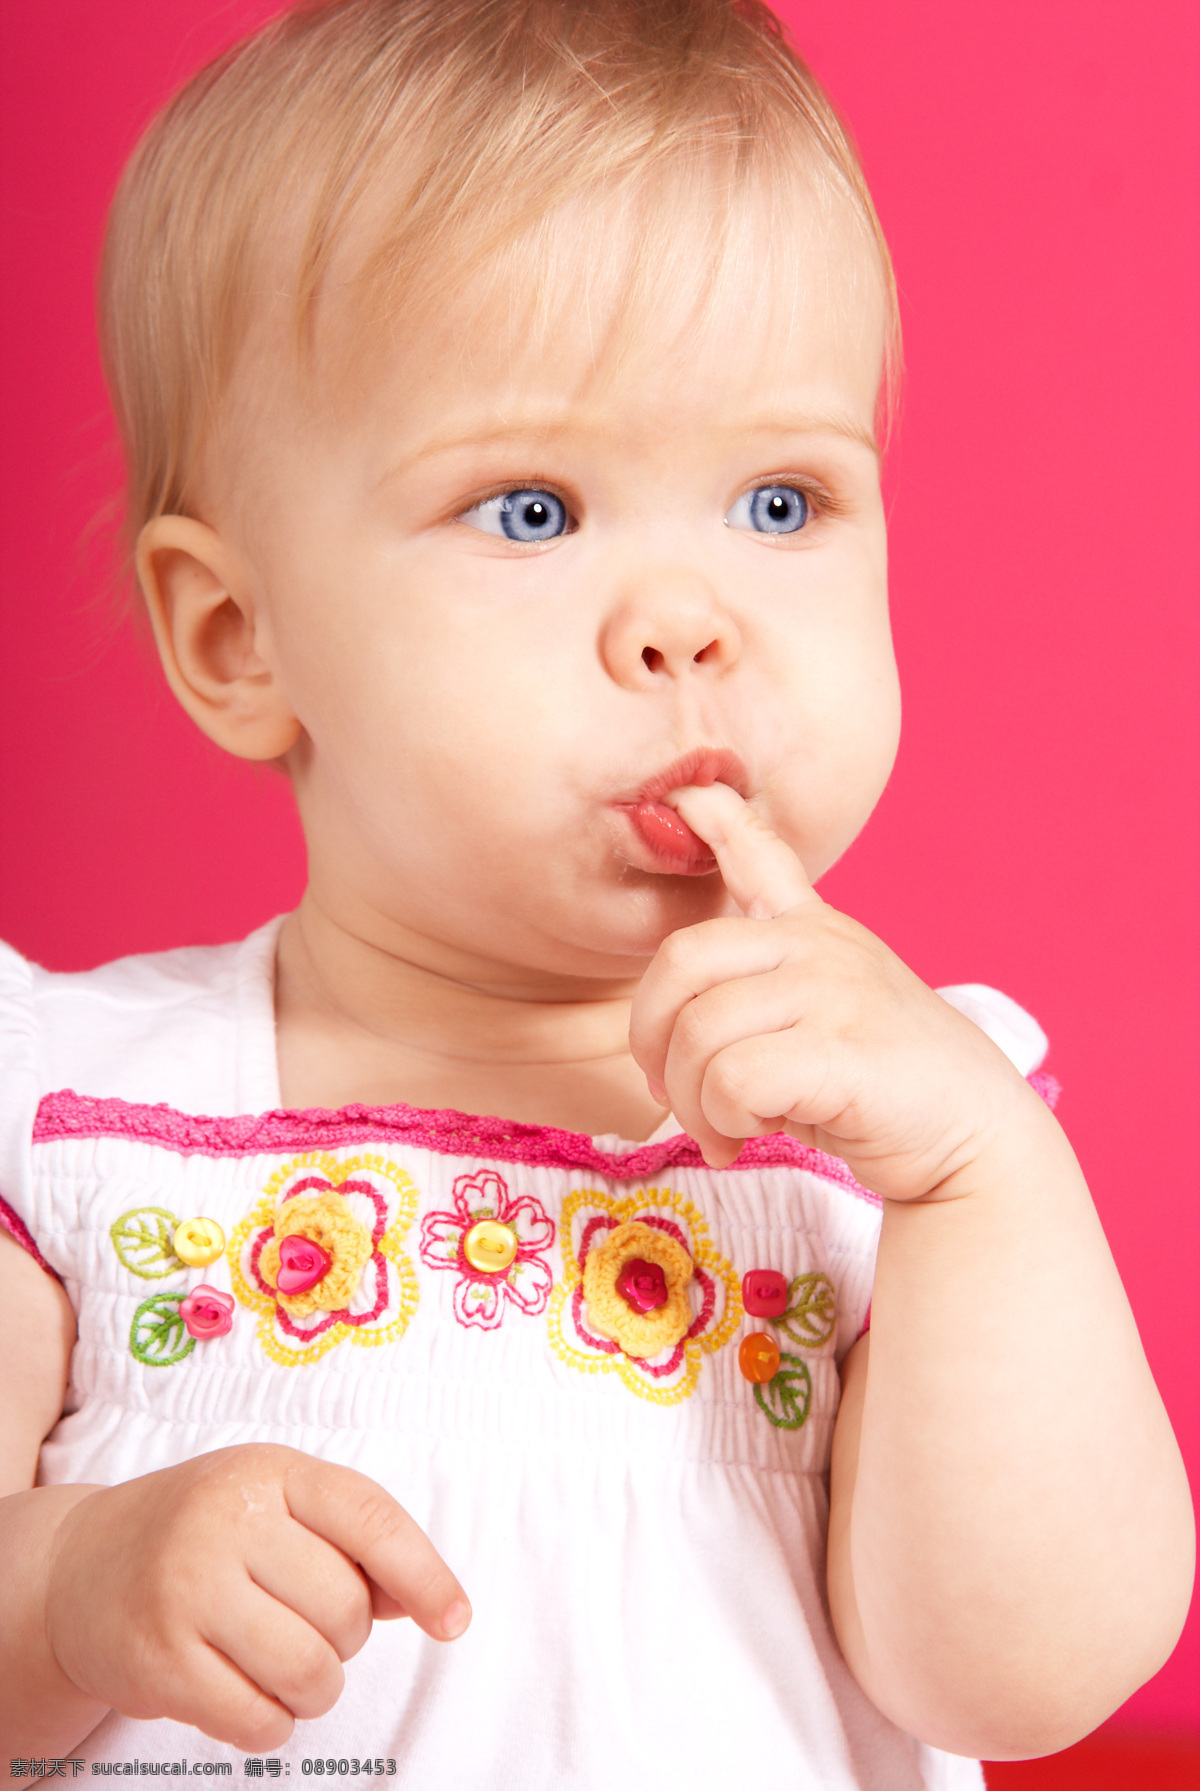 吃 手指 可爱 宝宝 baby 孩子 小孩 健康宝宝 外国宝宝 宝宝吃手指 儿童幼儿 宝宝图片 人物图片